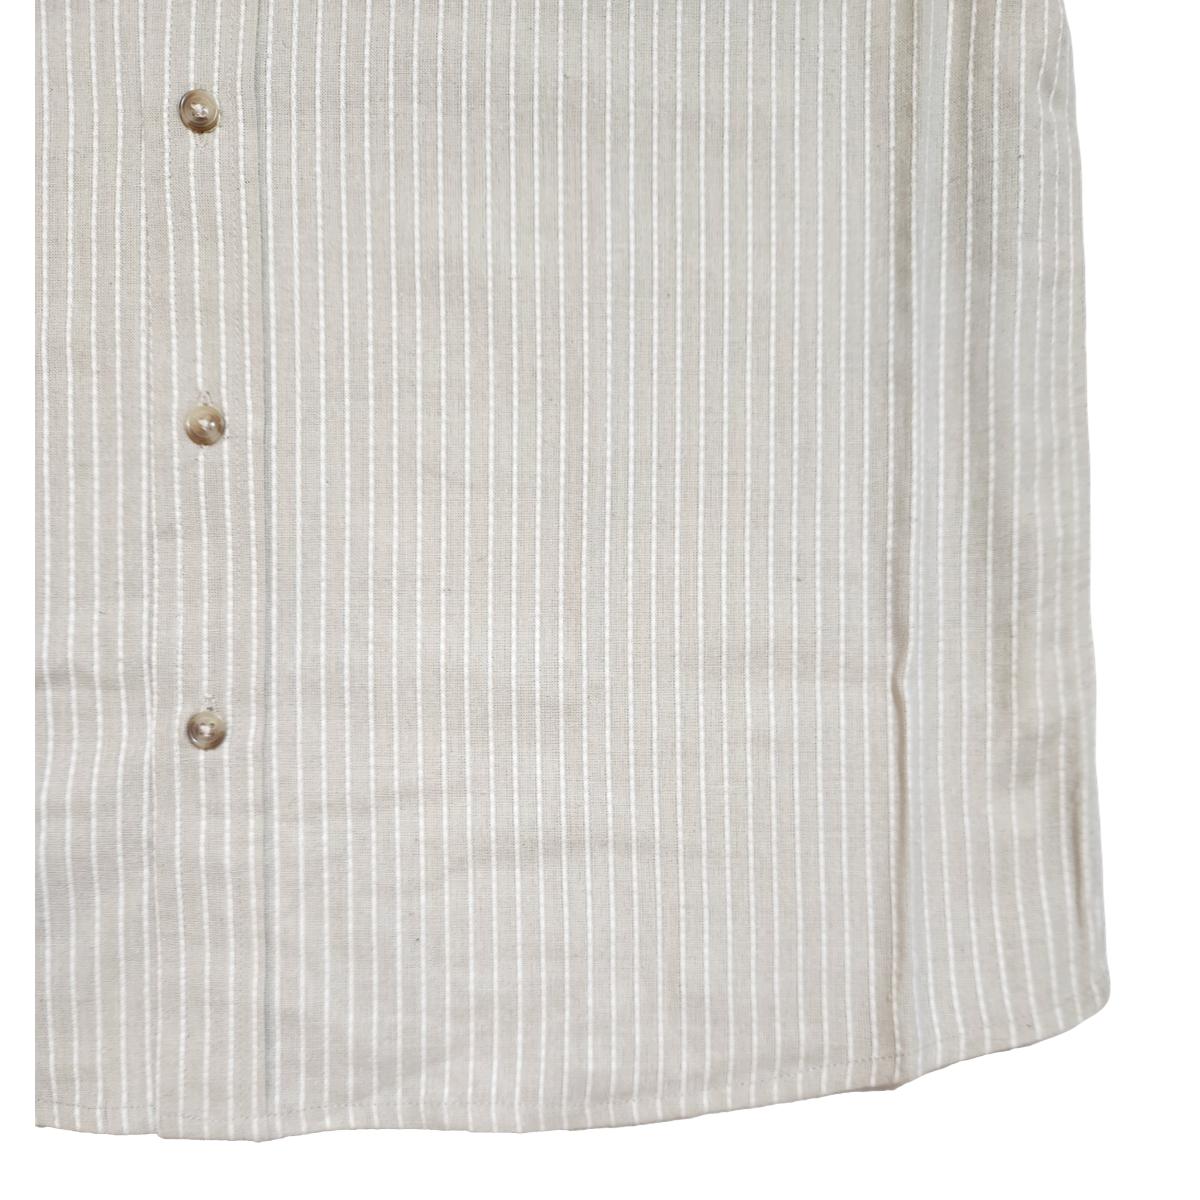 Cotton Linen Striped Short Sleeve Shirt Latte - Shirts